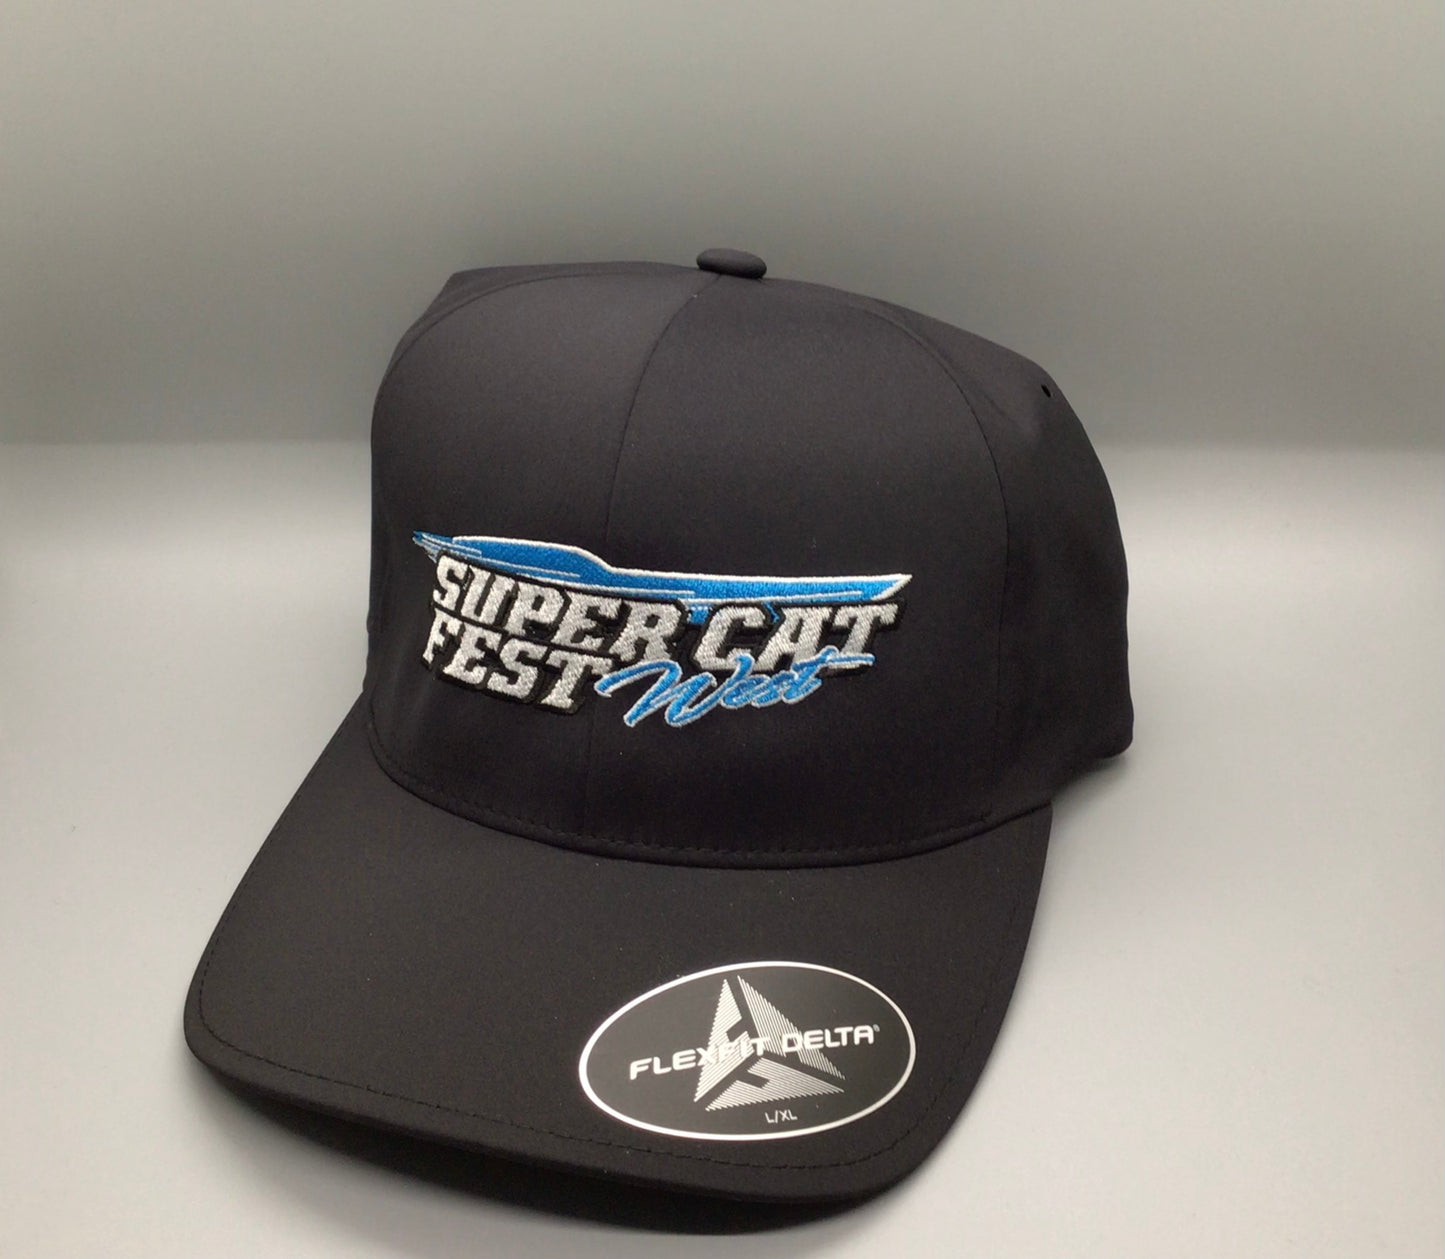 Super Cat fest West Hats